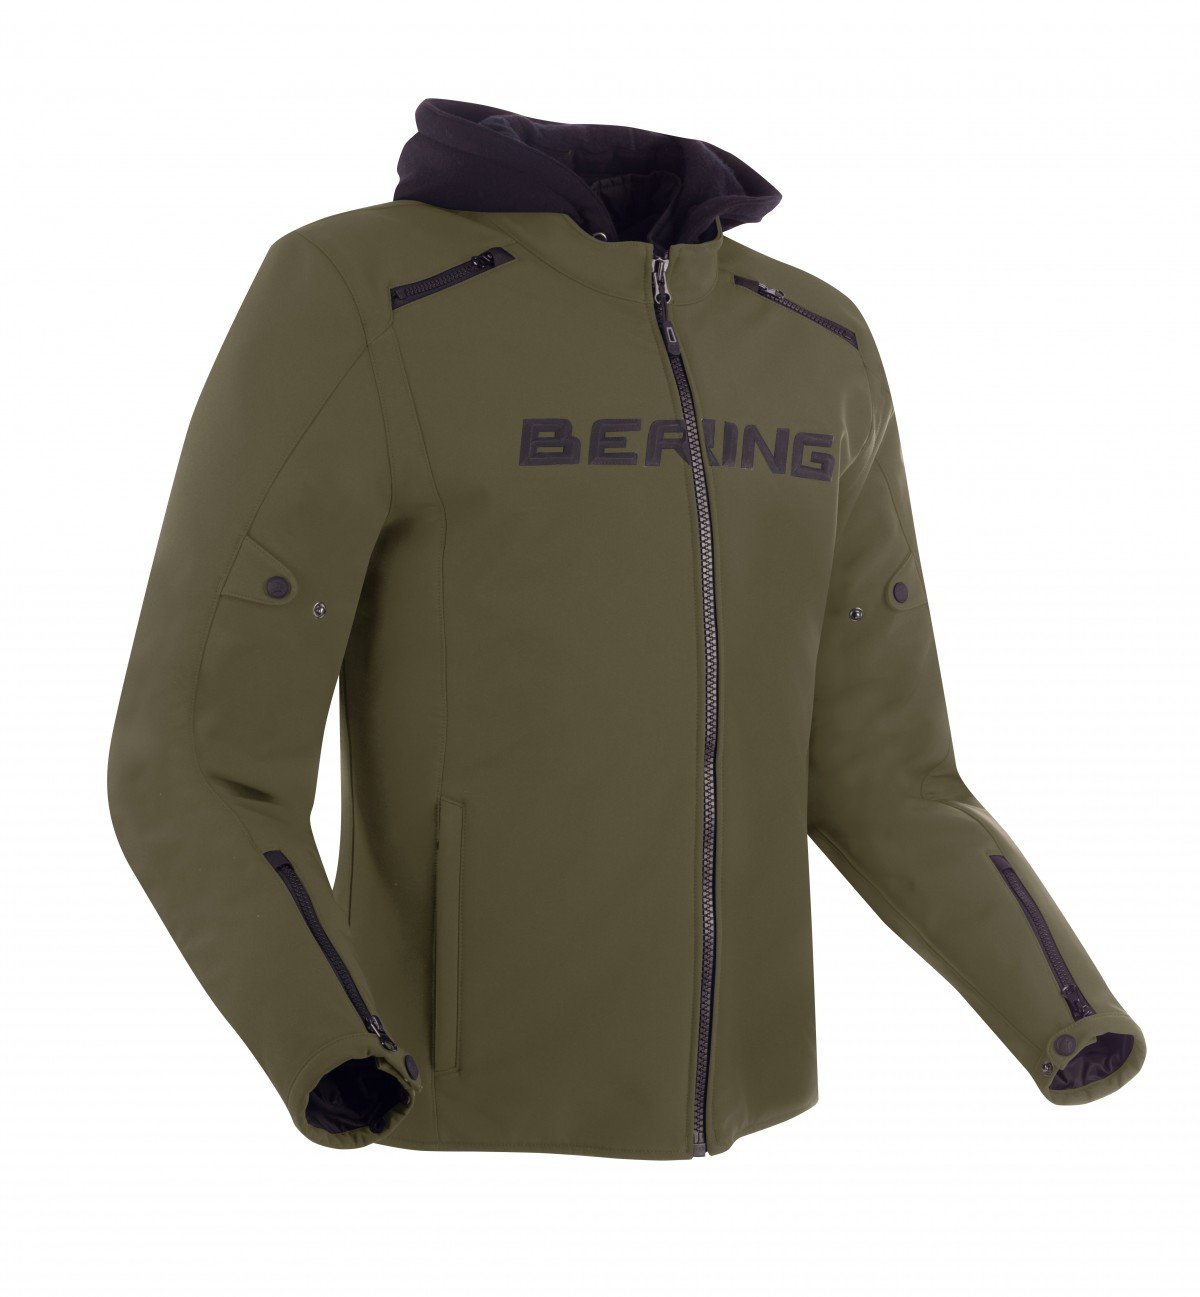 Image of Bering Elite Jacket Khaki Size 4XL ID 3660815170298